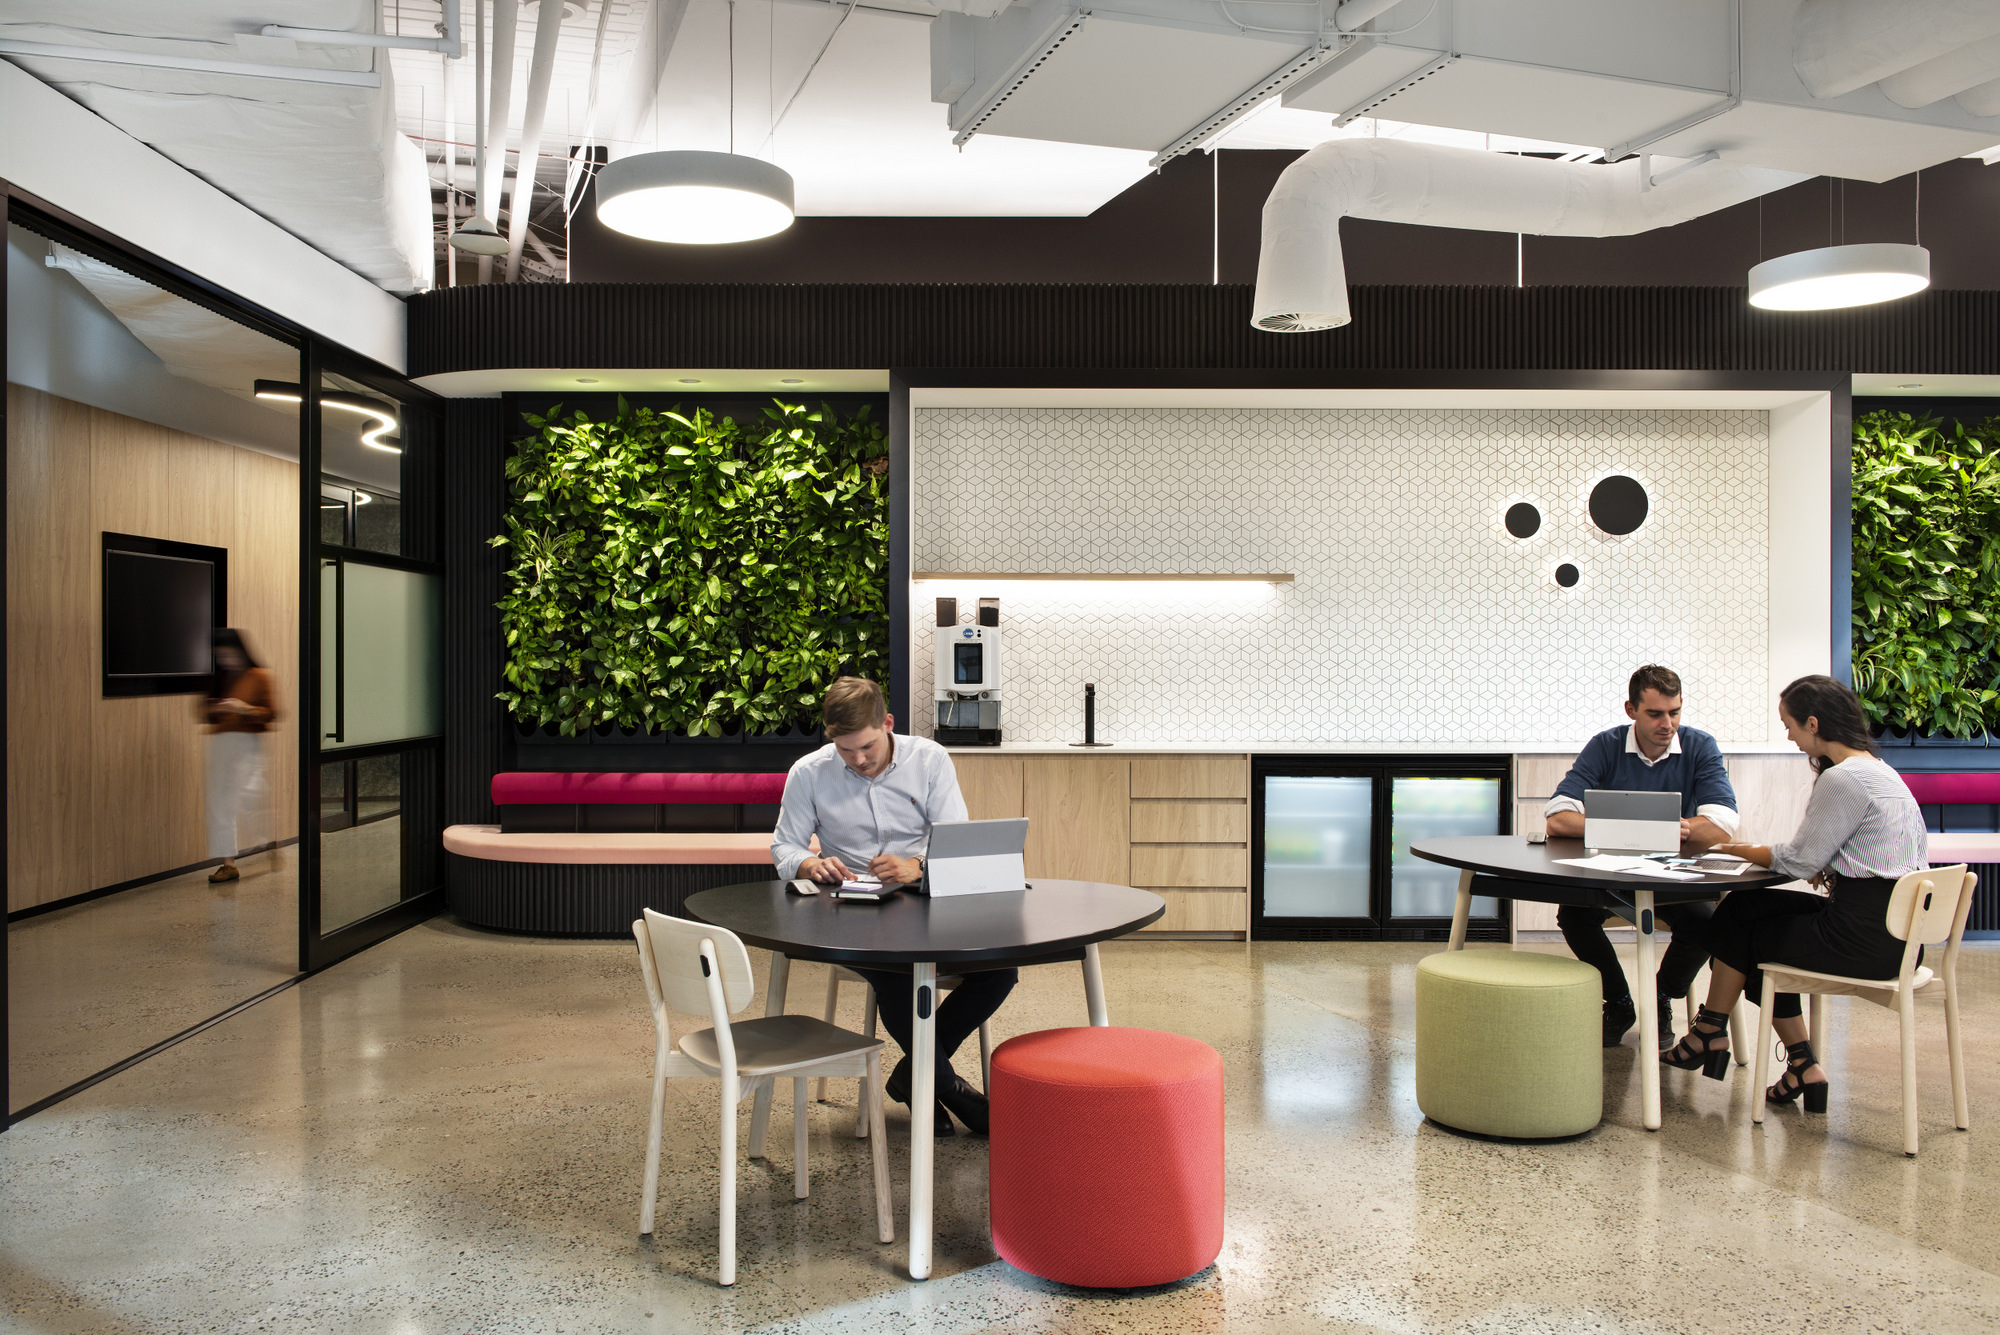 Microsoft(マイクロソフト)のオフィス - メルボルン, オーストラリアのカフェスペース